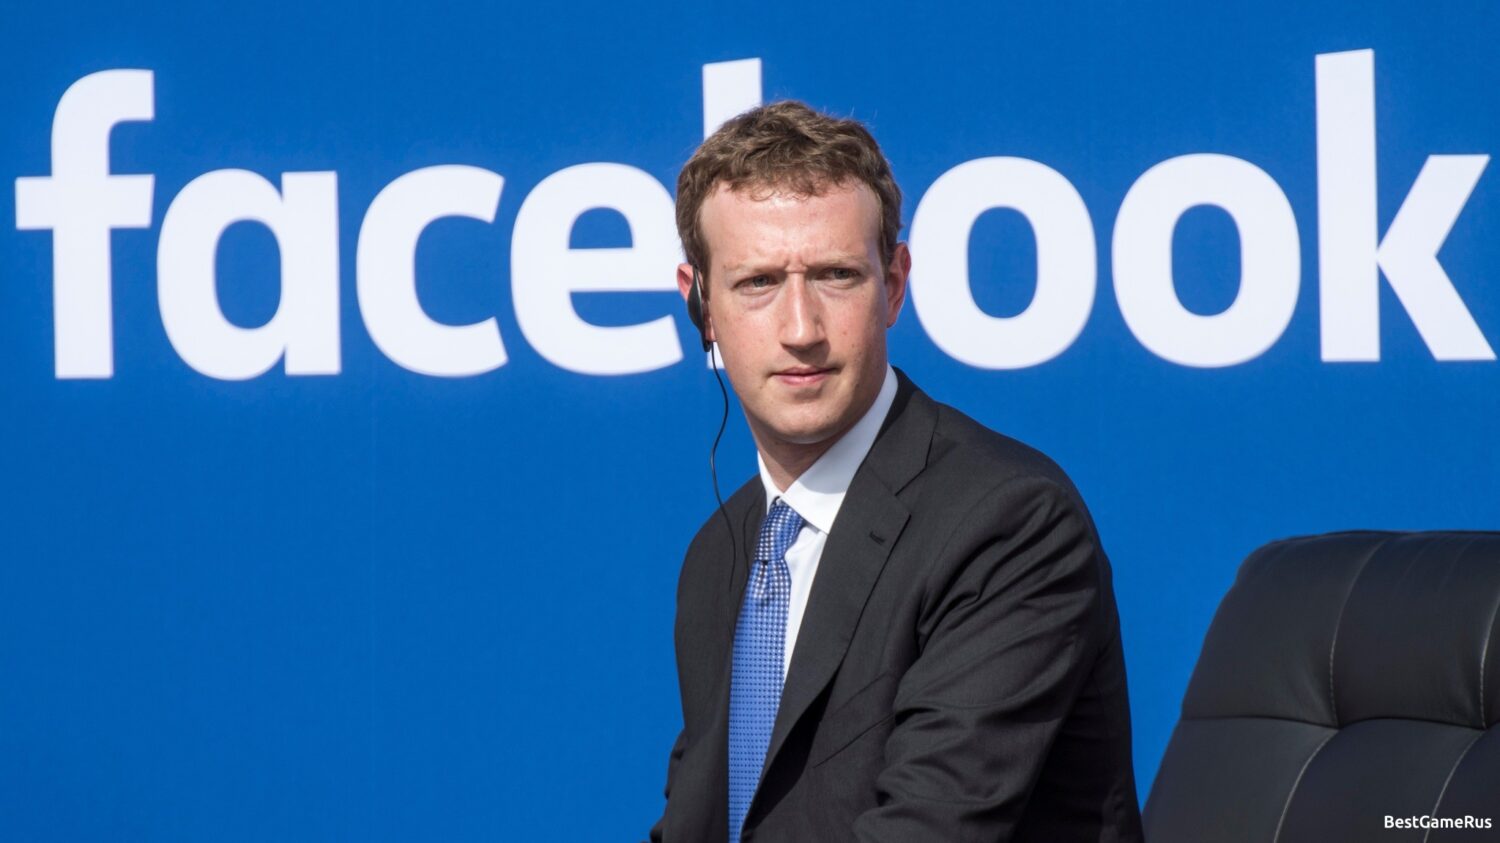 Ցուկերբերգը որոշել է արմատապես փոխել Facebook-ը և զայրացնել մարդկանց